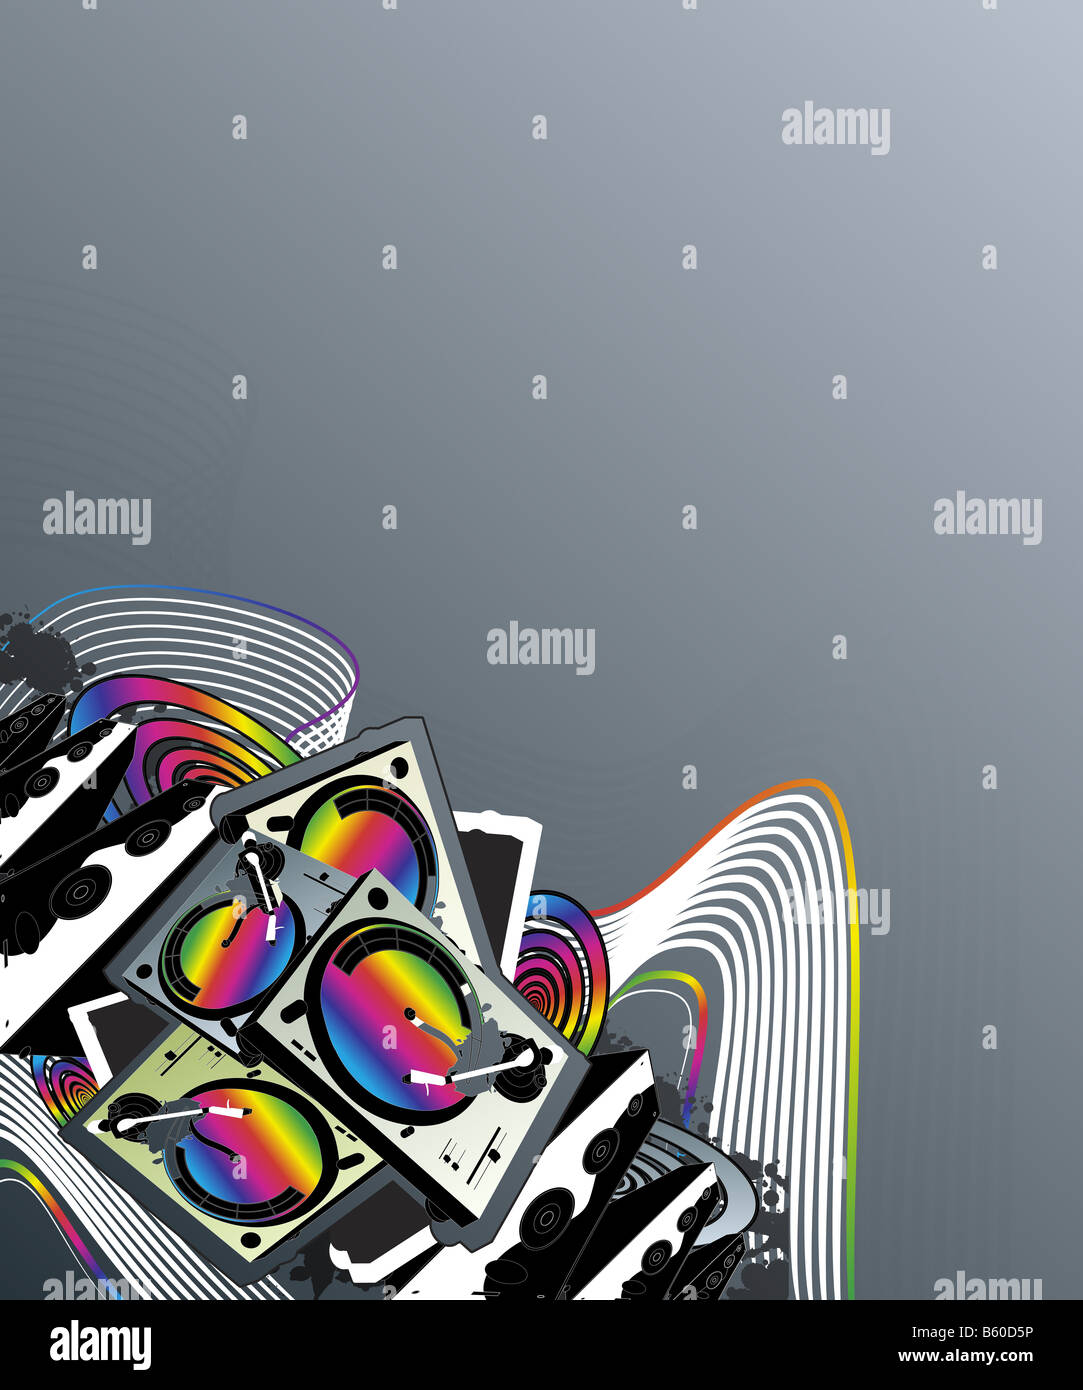 Illustrazione vettoriale di un giradischi e altoparlanti music design con colori Arcobaleno rivestita di arte e spirali rétro Foto Stock